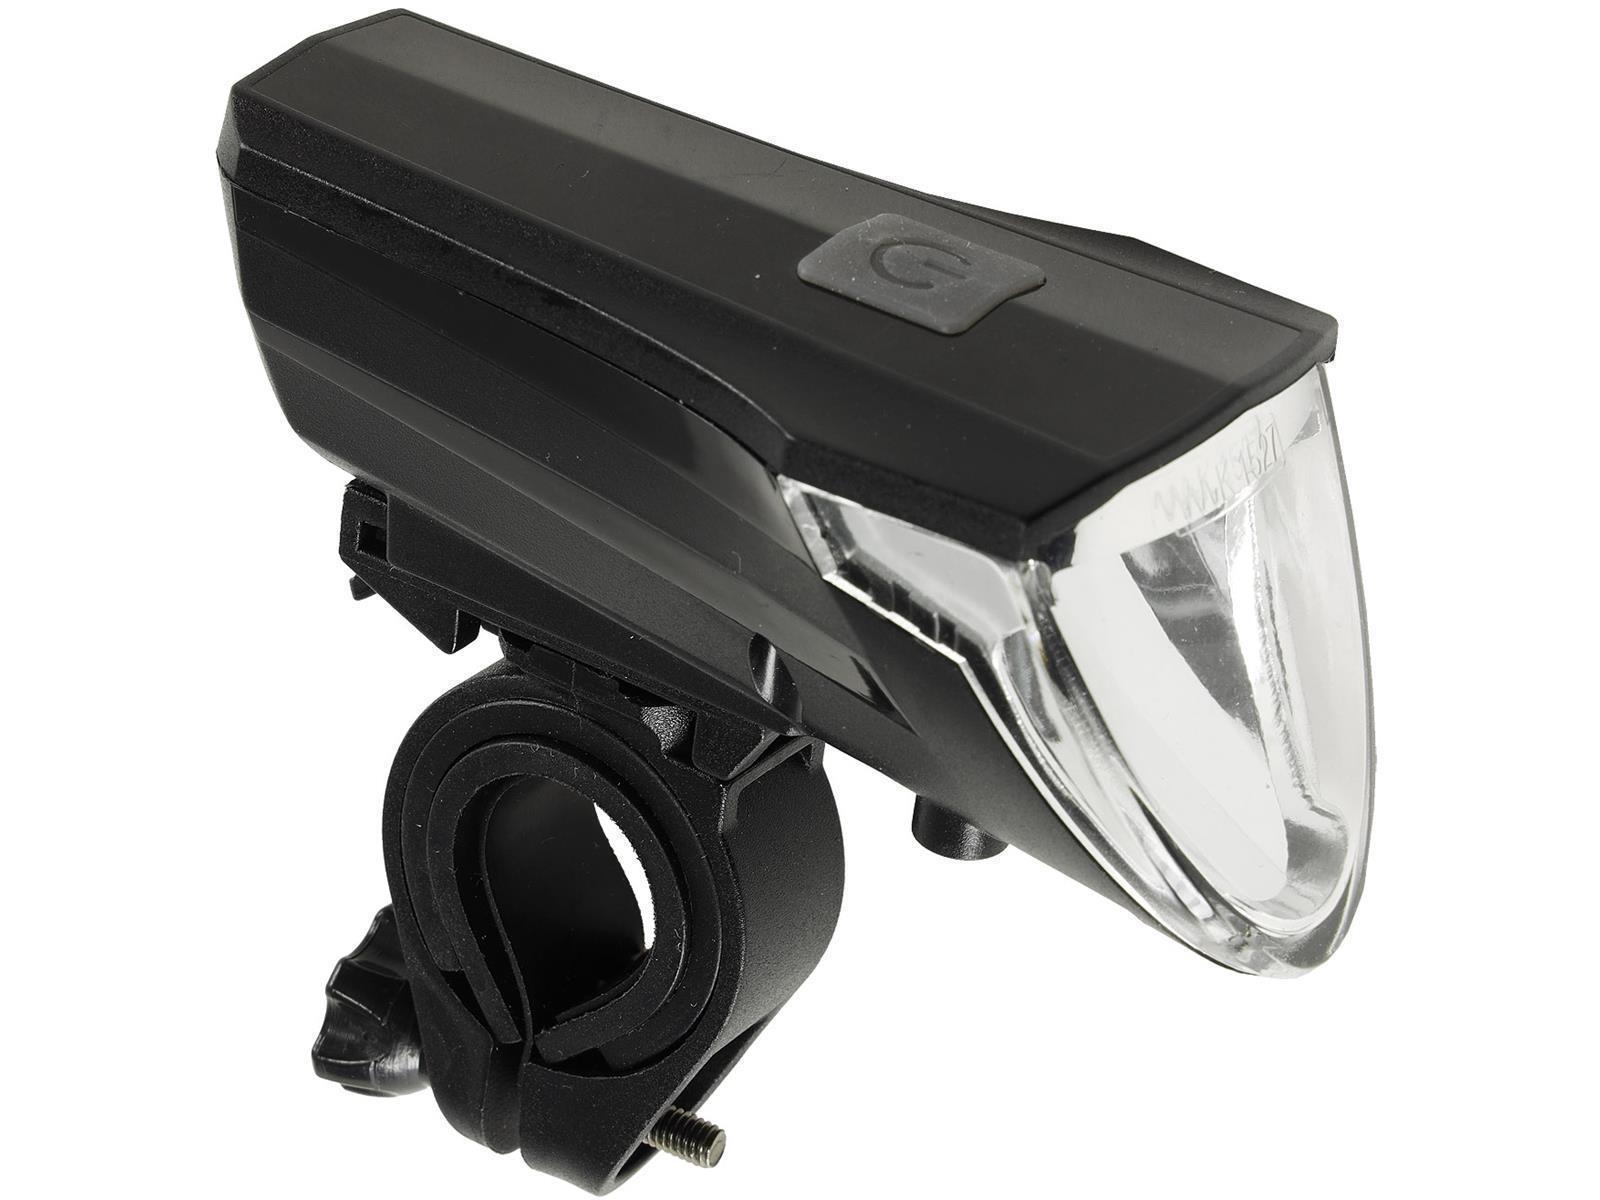 Fahrrad LED-Beleuchtungsset "CFL 60 pro"60Lux, StVZO zugelassen, Lithium-Akku